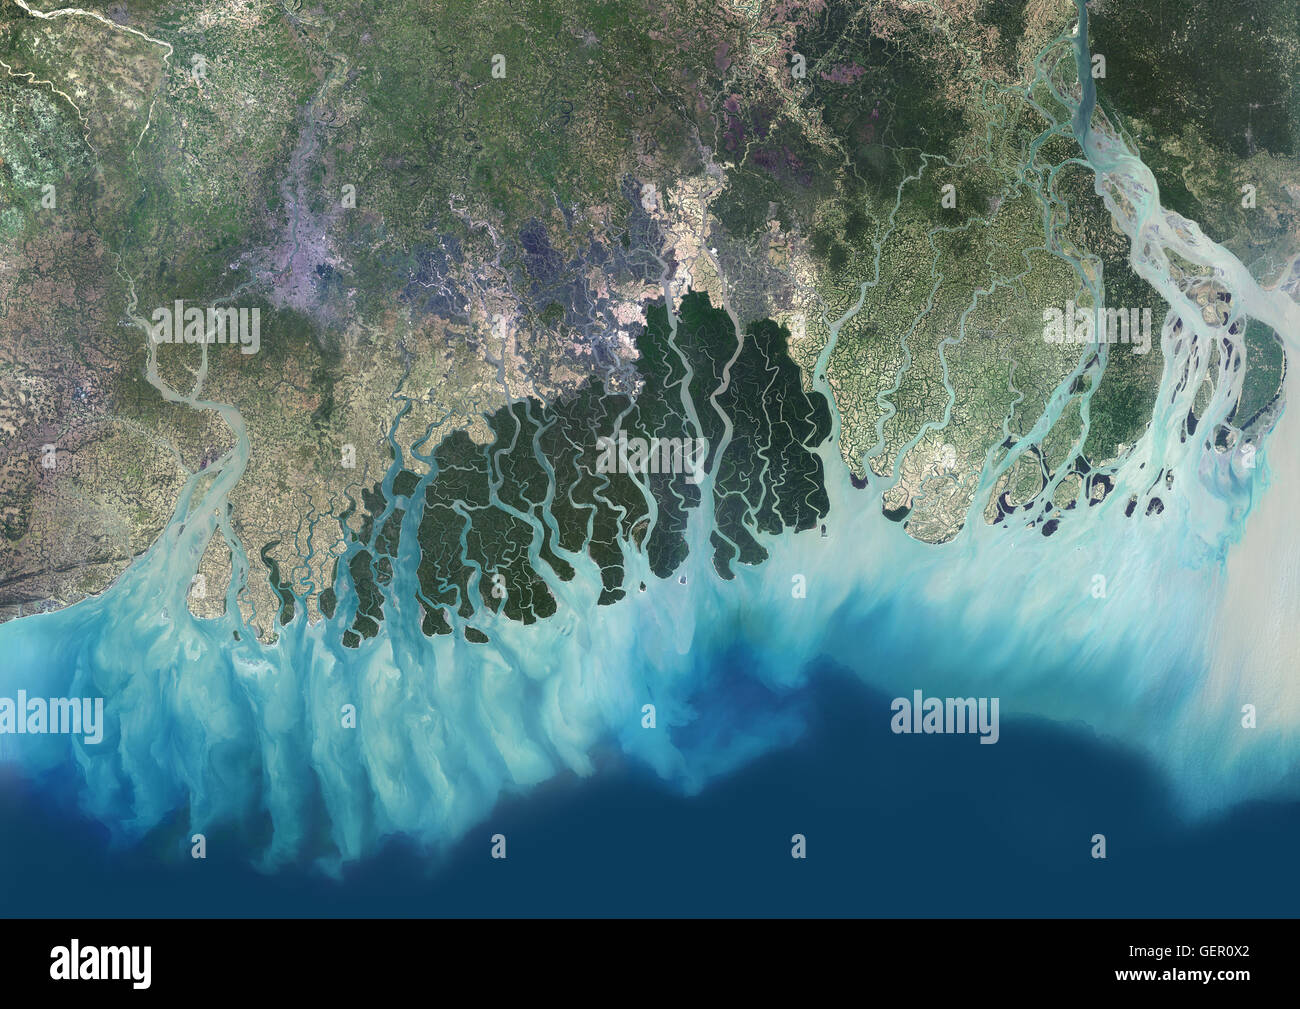 Vista satellitare del Gange River Delta, Bangladesh, India. Noto anche come il Brahmaputra Delta, esso si svuota nel golfo del Bengala. Kolkata si trova entro la parte inferiore del delta del Gange lungo il Fiume Hooghly (a ovest sull'immagine). Questa immagine è stata compilata dal da Foto Stock